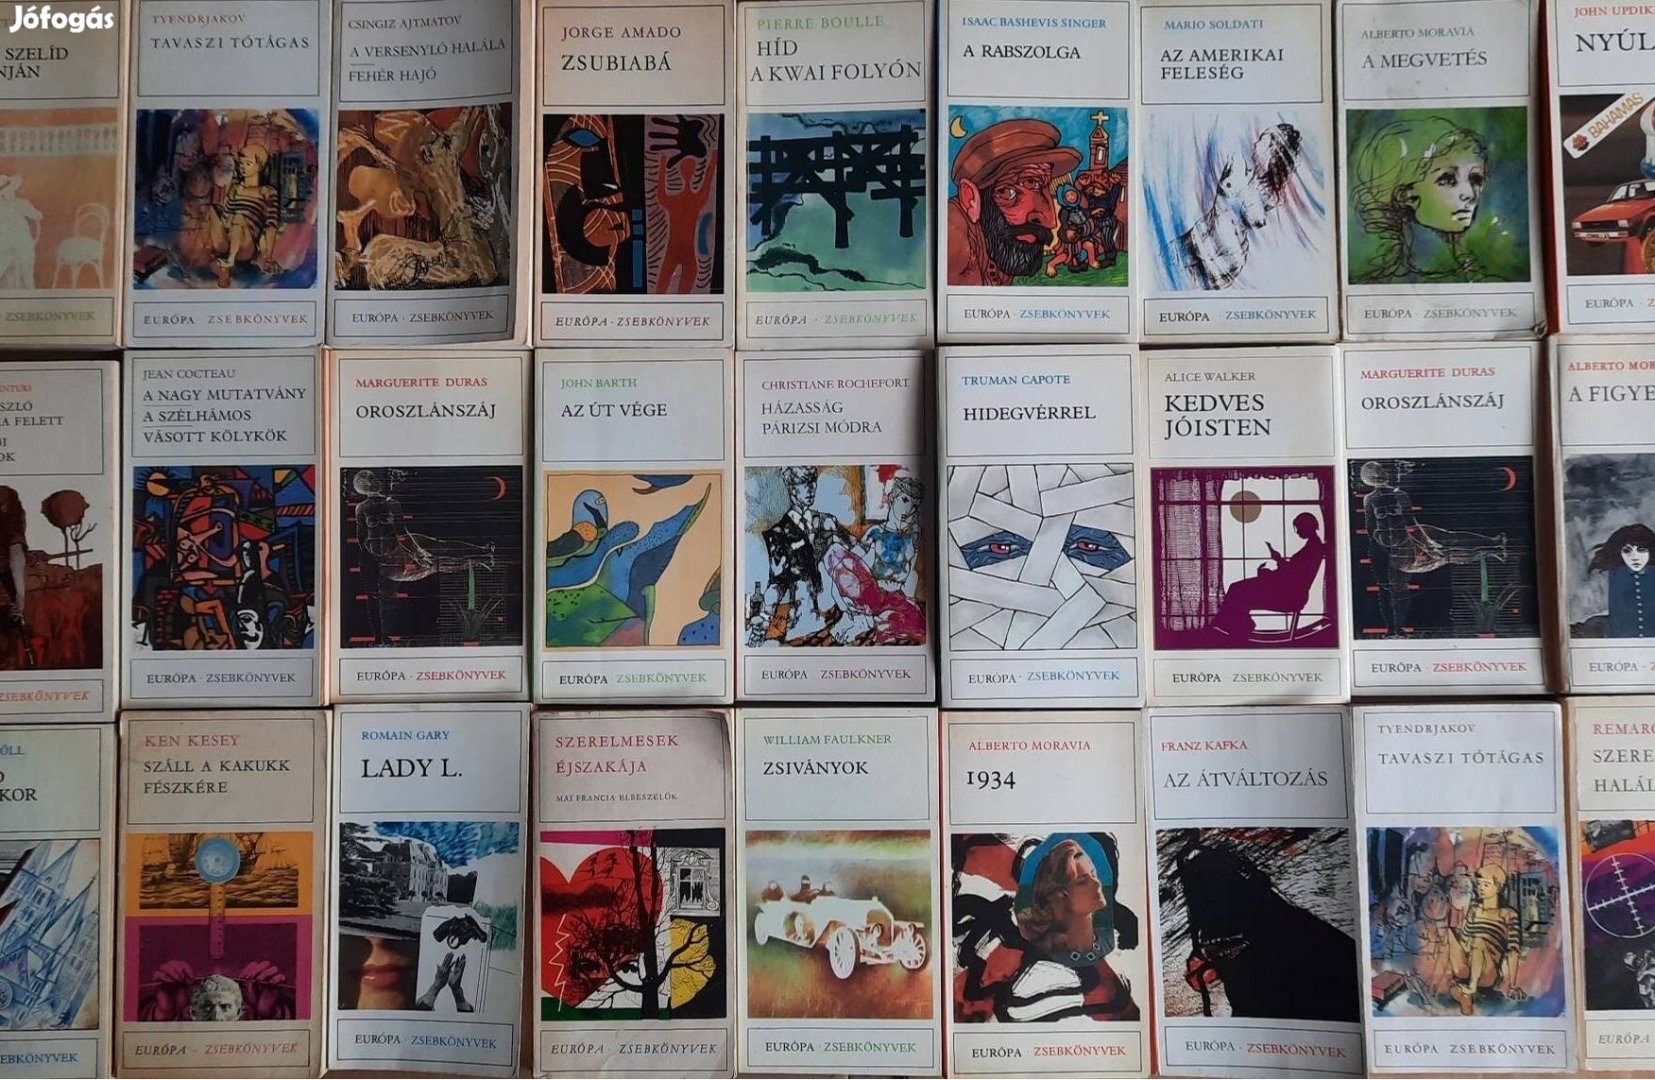 27 darab könyv eladó az Európa Zsebkönyvek sorozatból